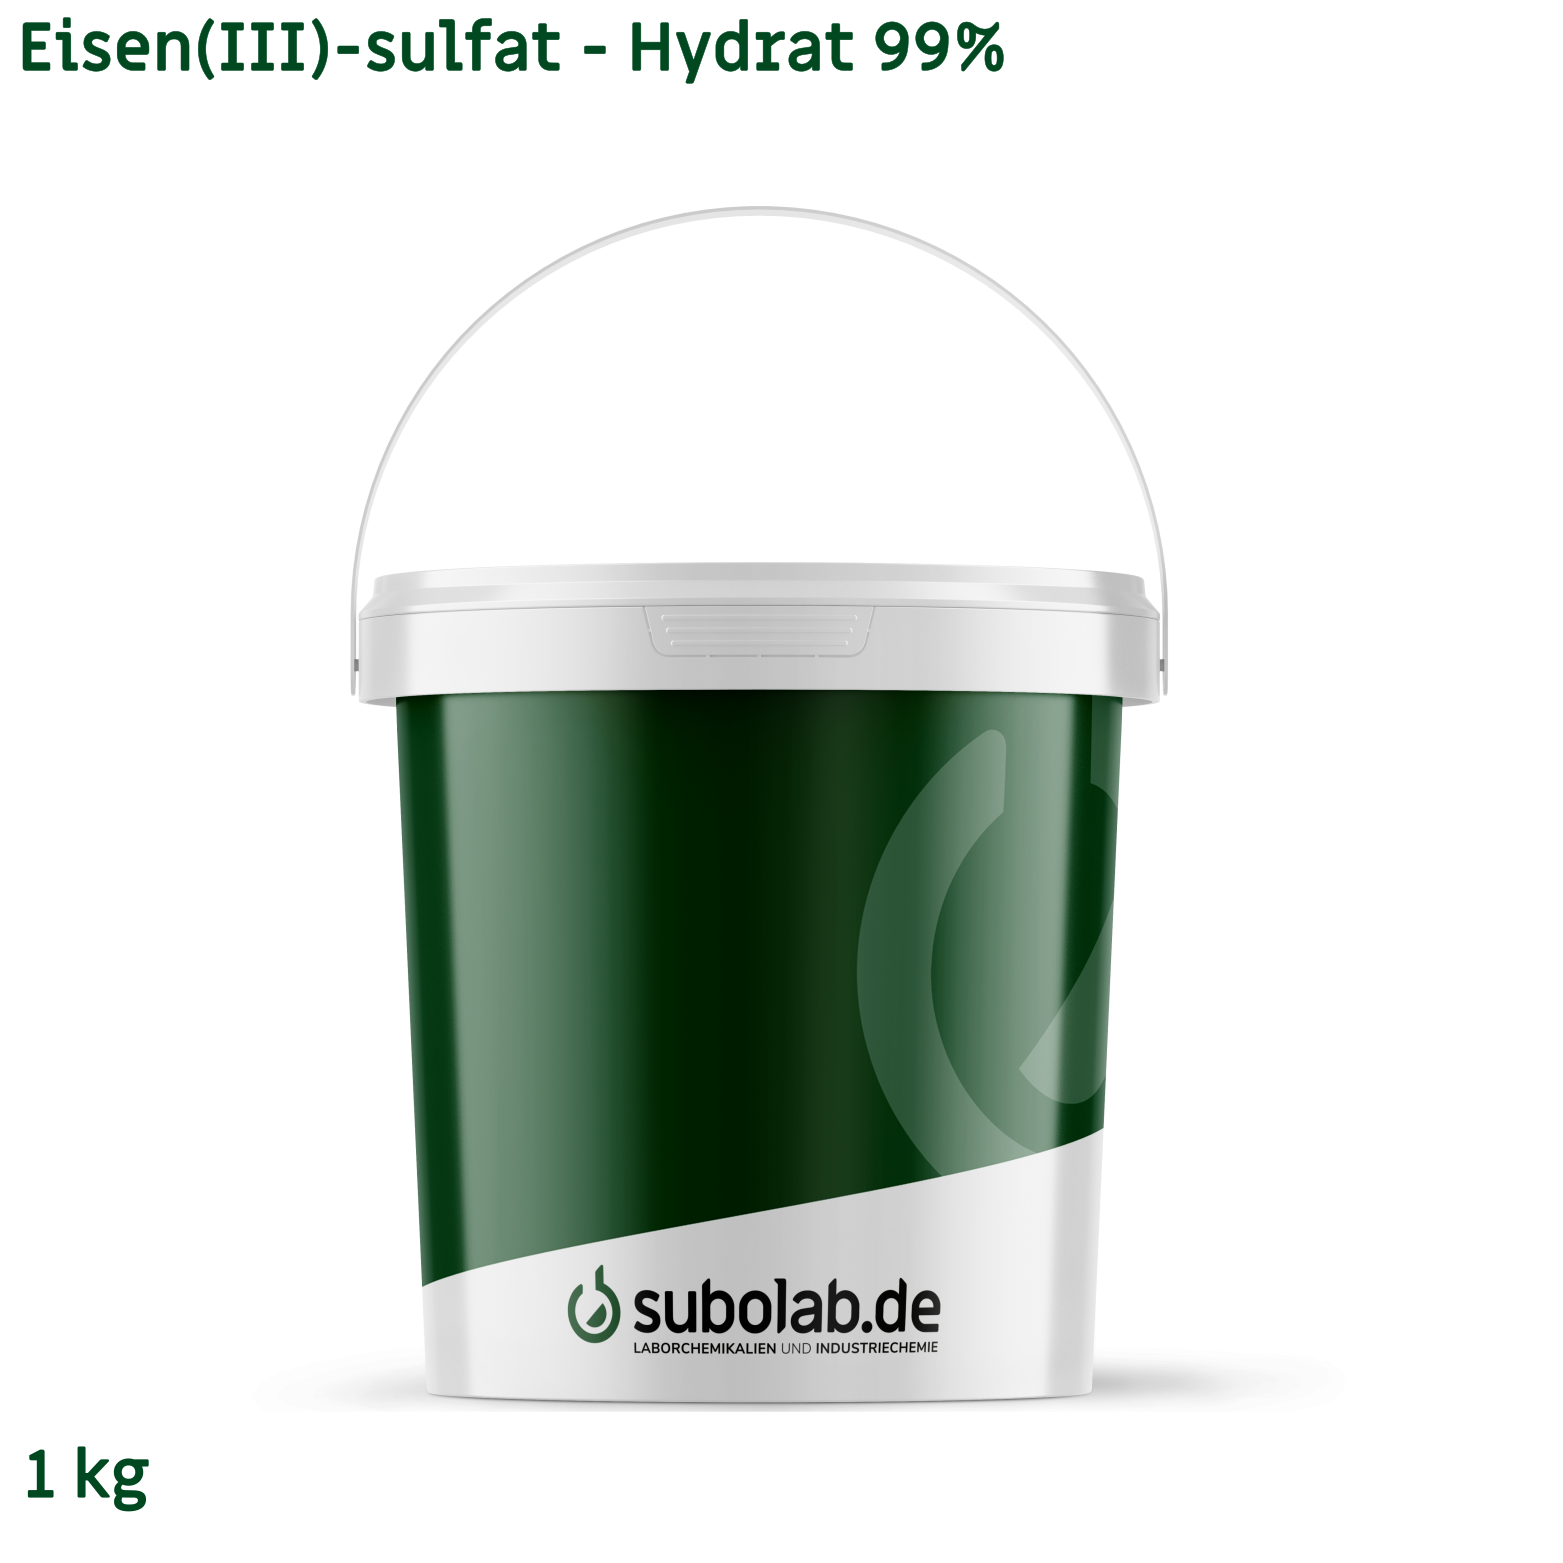 Bild von Eisen(III)-sulfat - Hydrat 99% (1 kg)